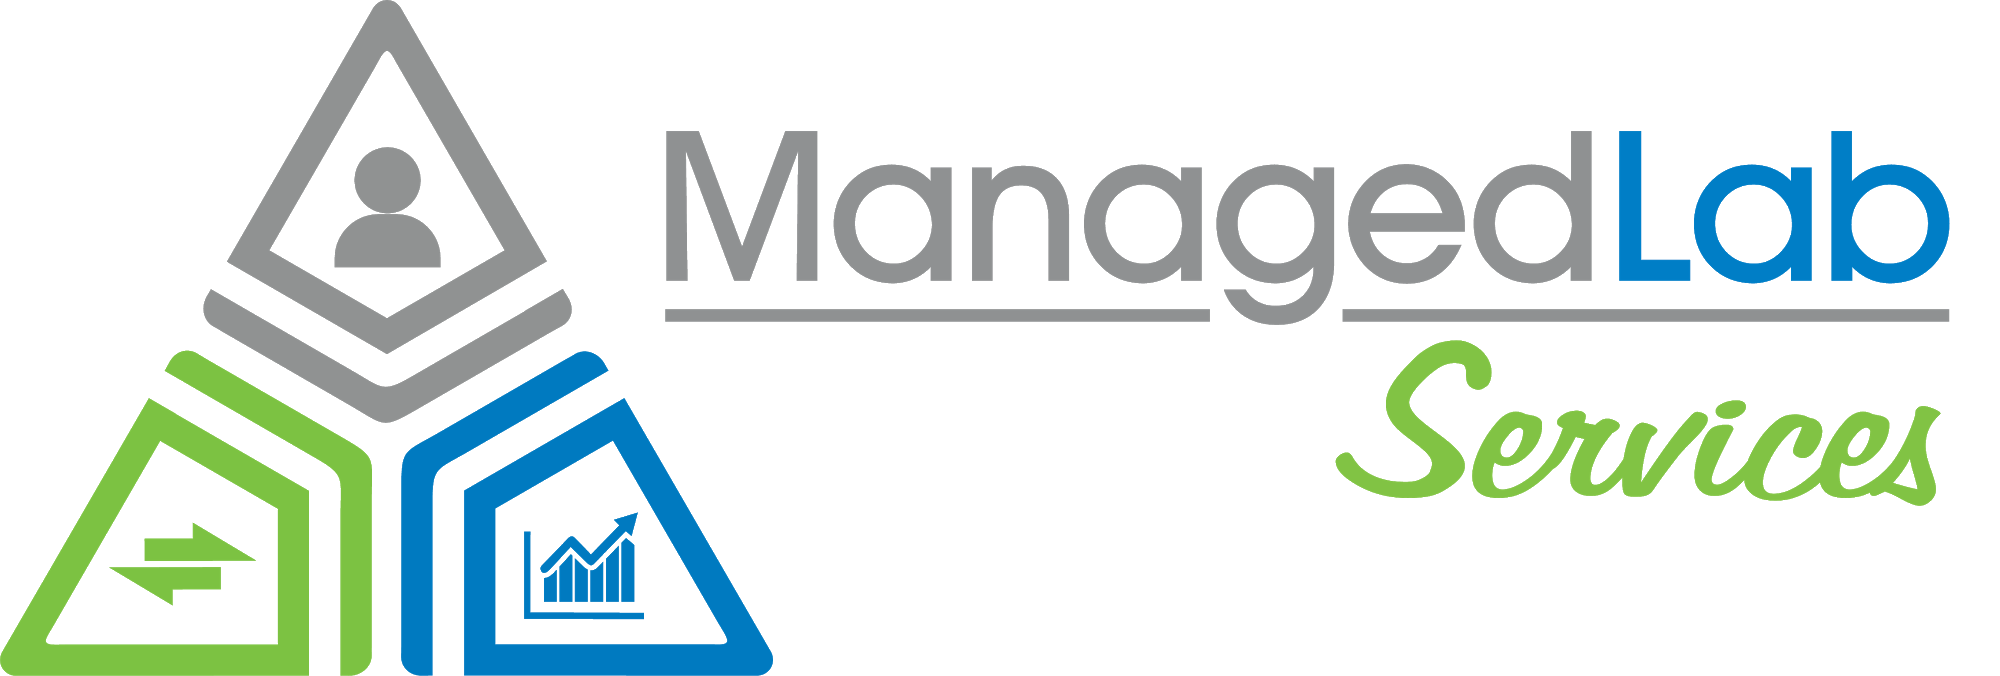 ManagedLab Services